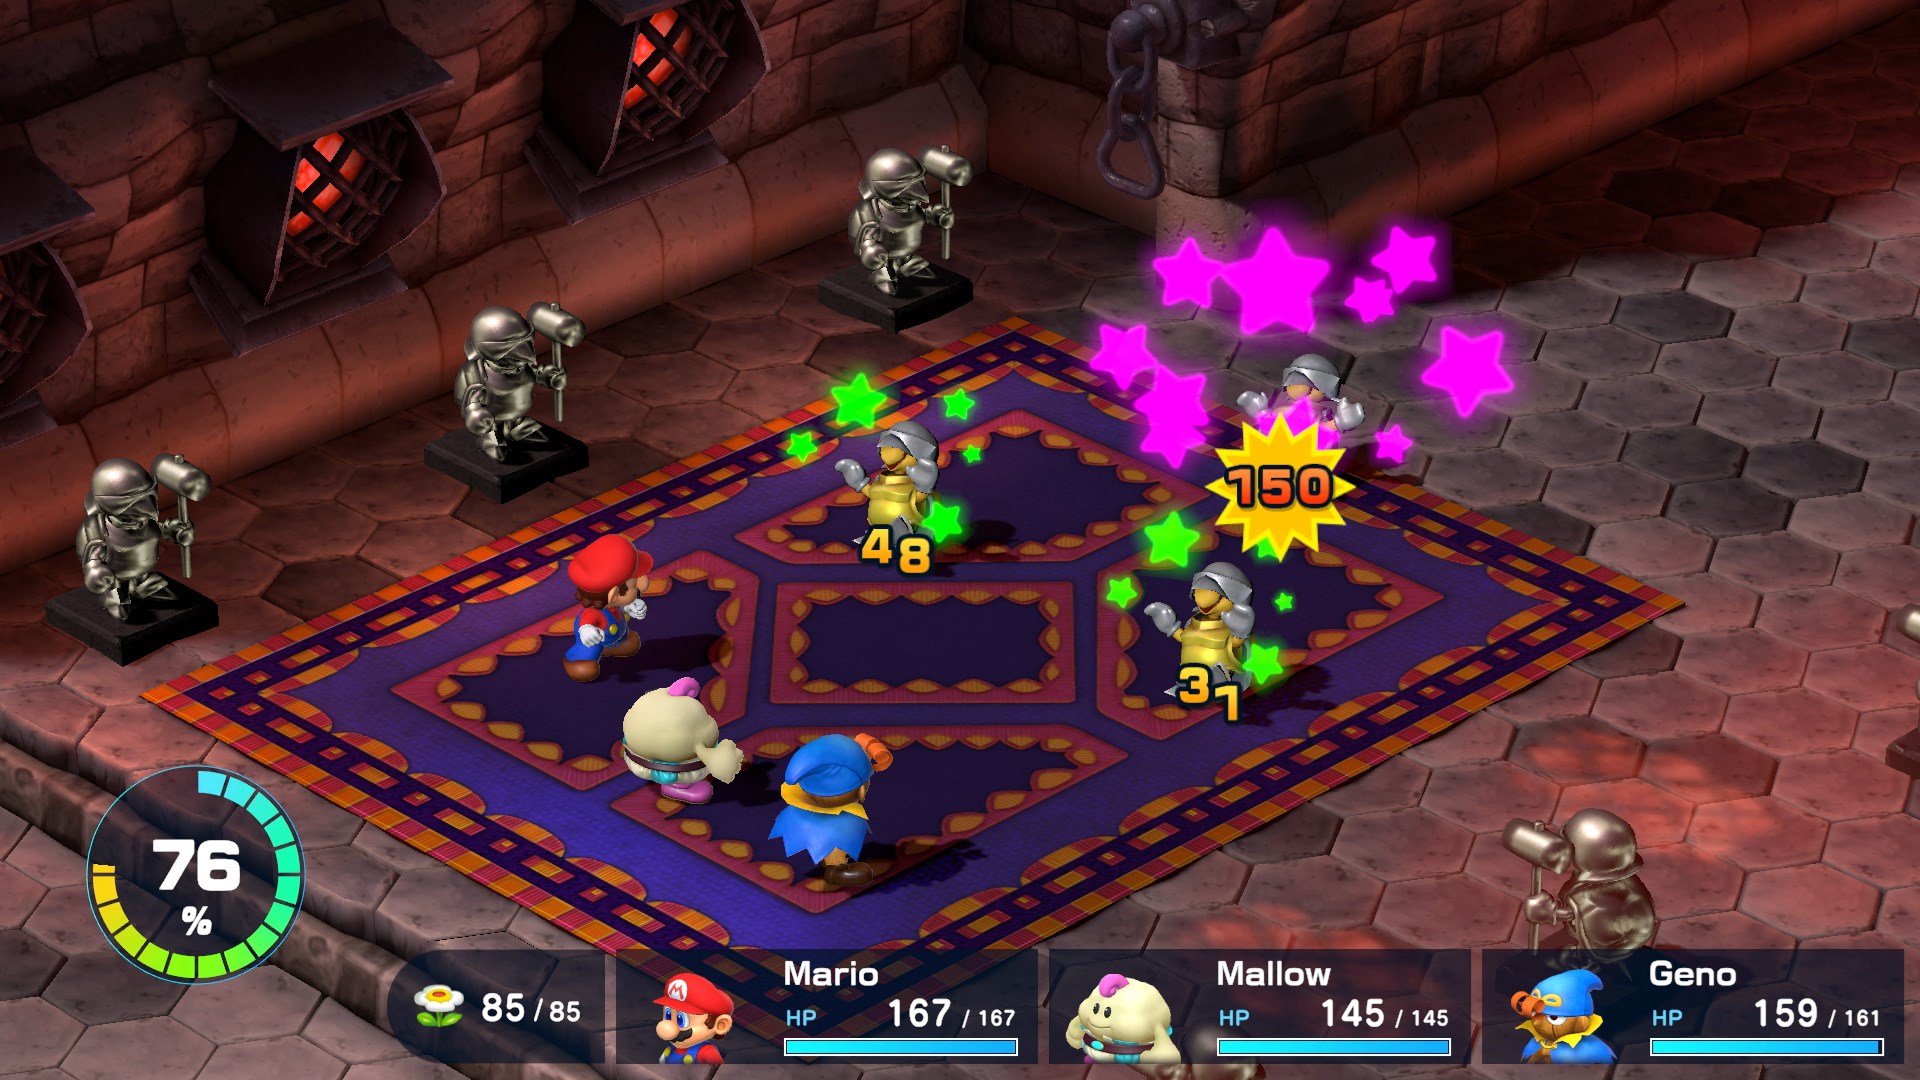 Mario and his crew battle Koopas in Super Mario RPG.